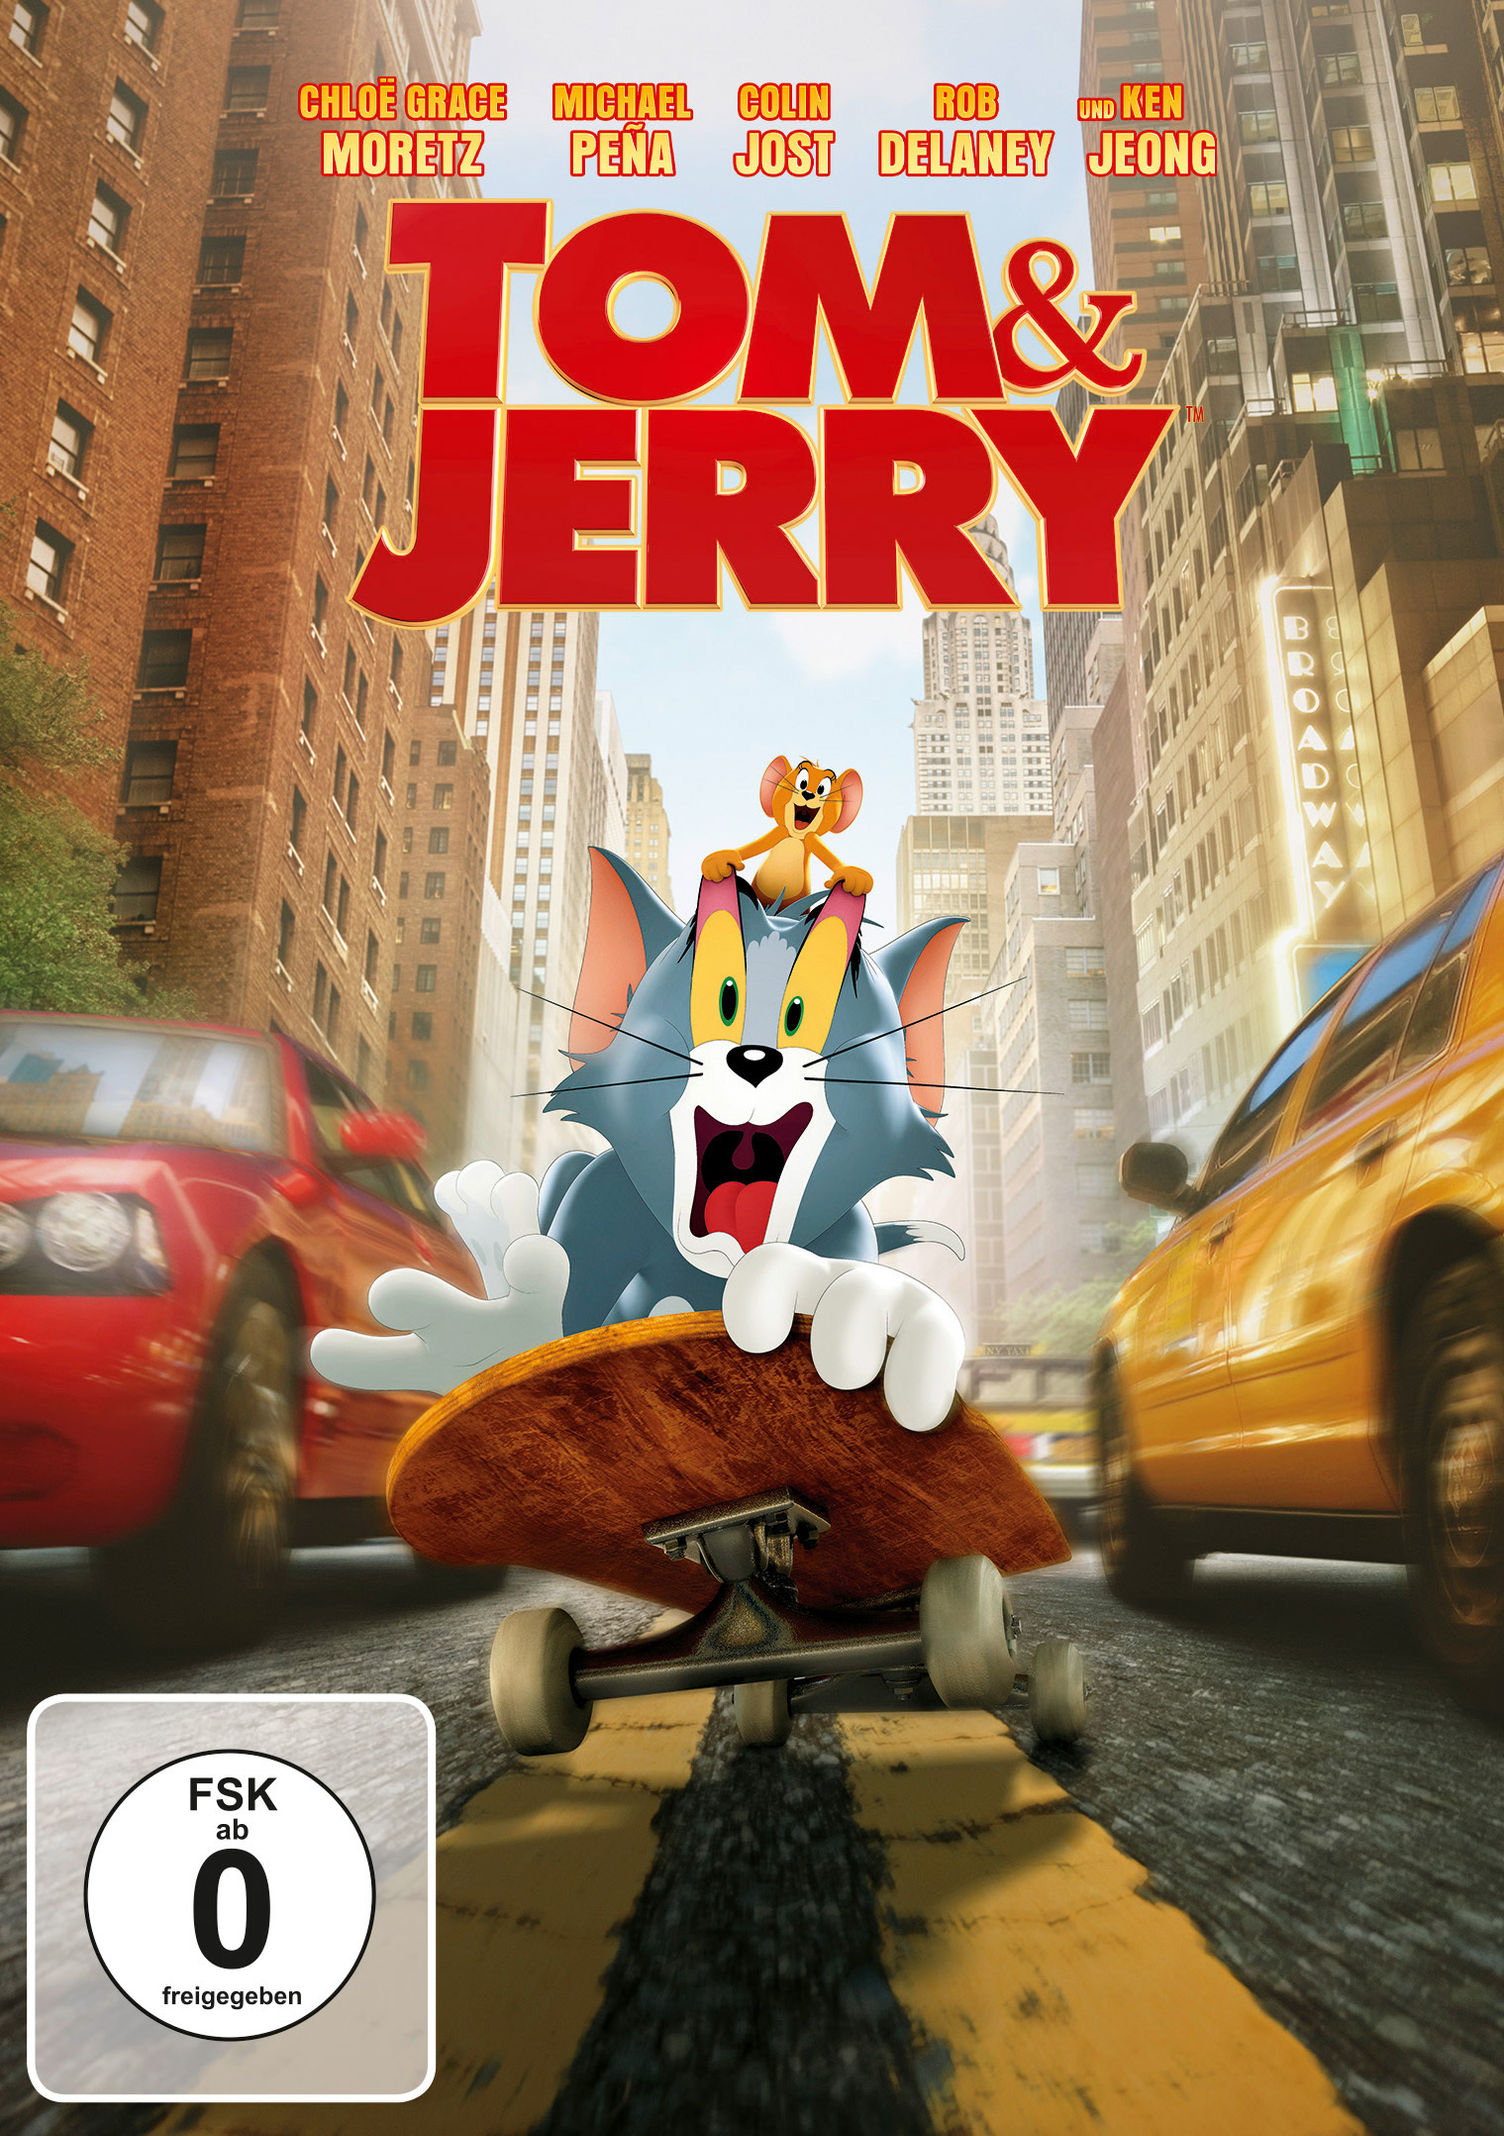 Tom & Jerry 2021 DVD jetzt bei Weltbild.at online bestellen